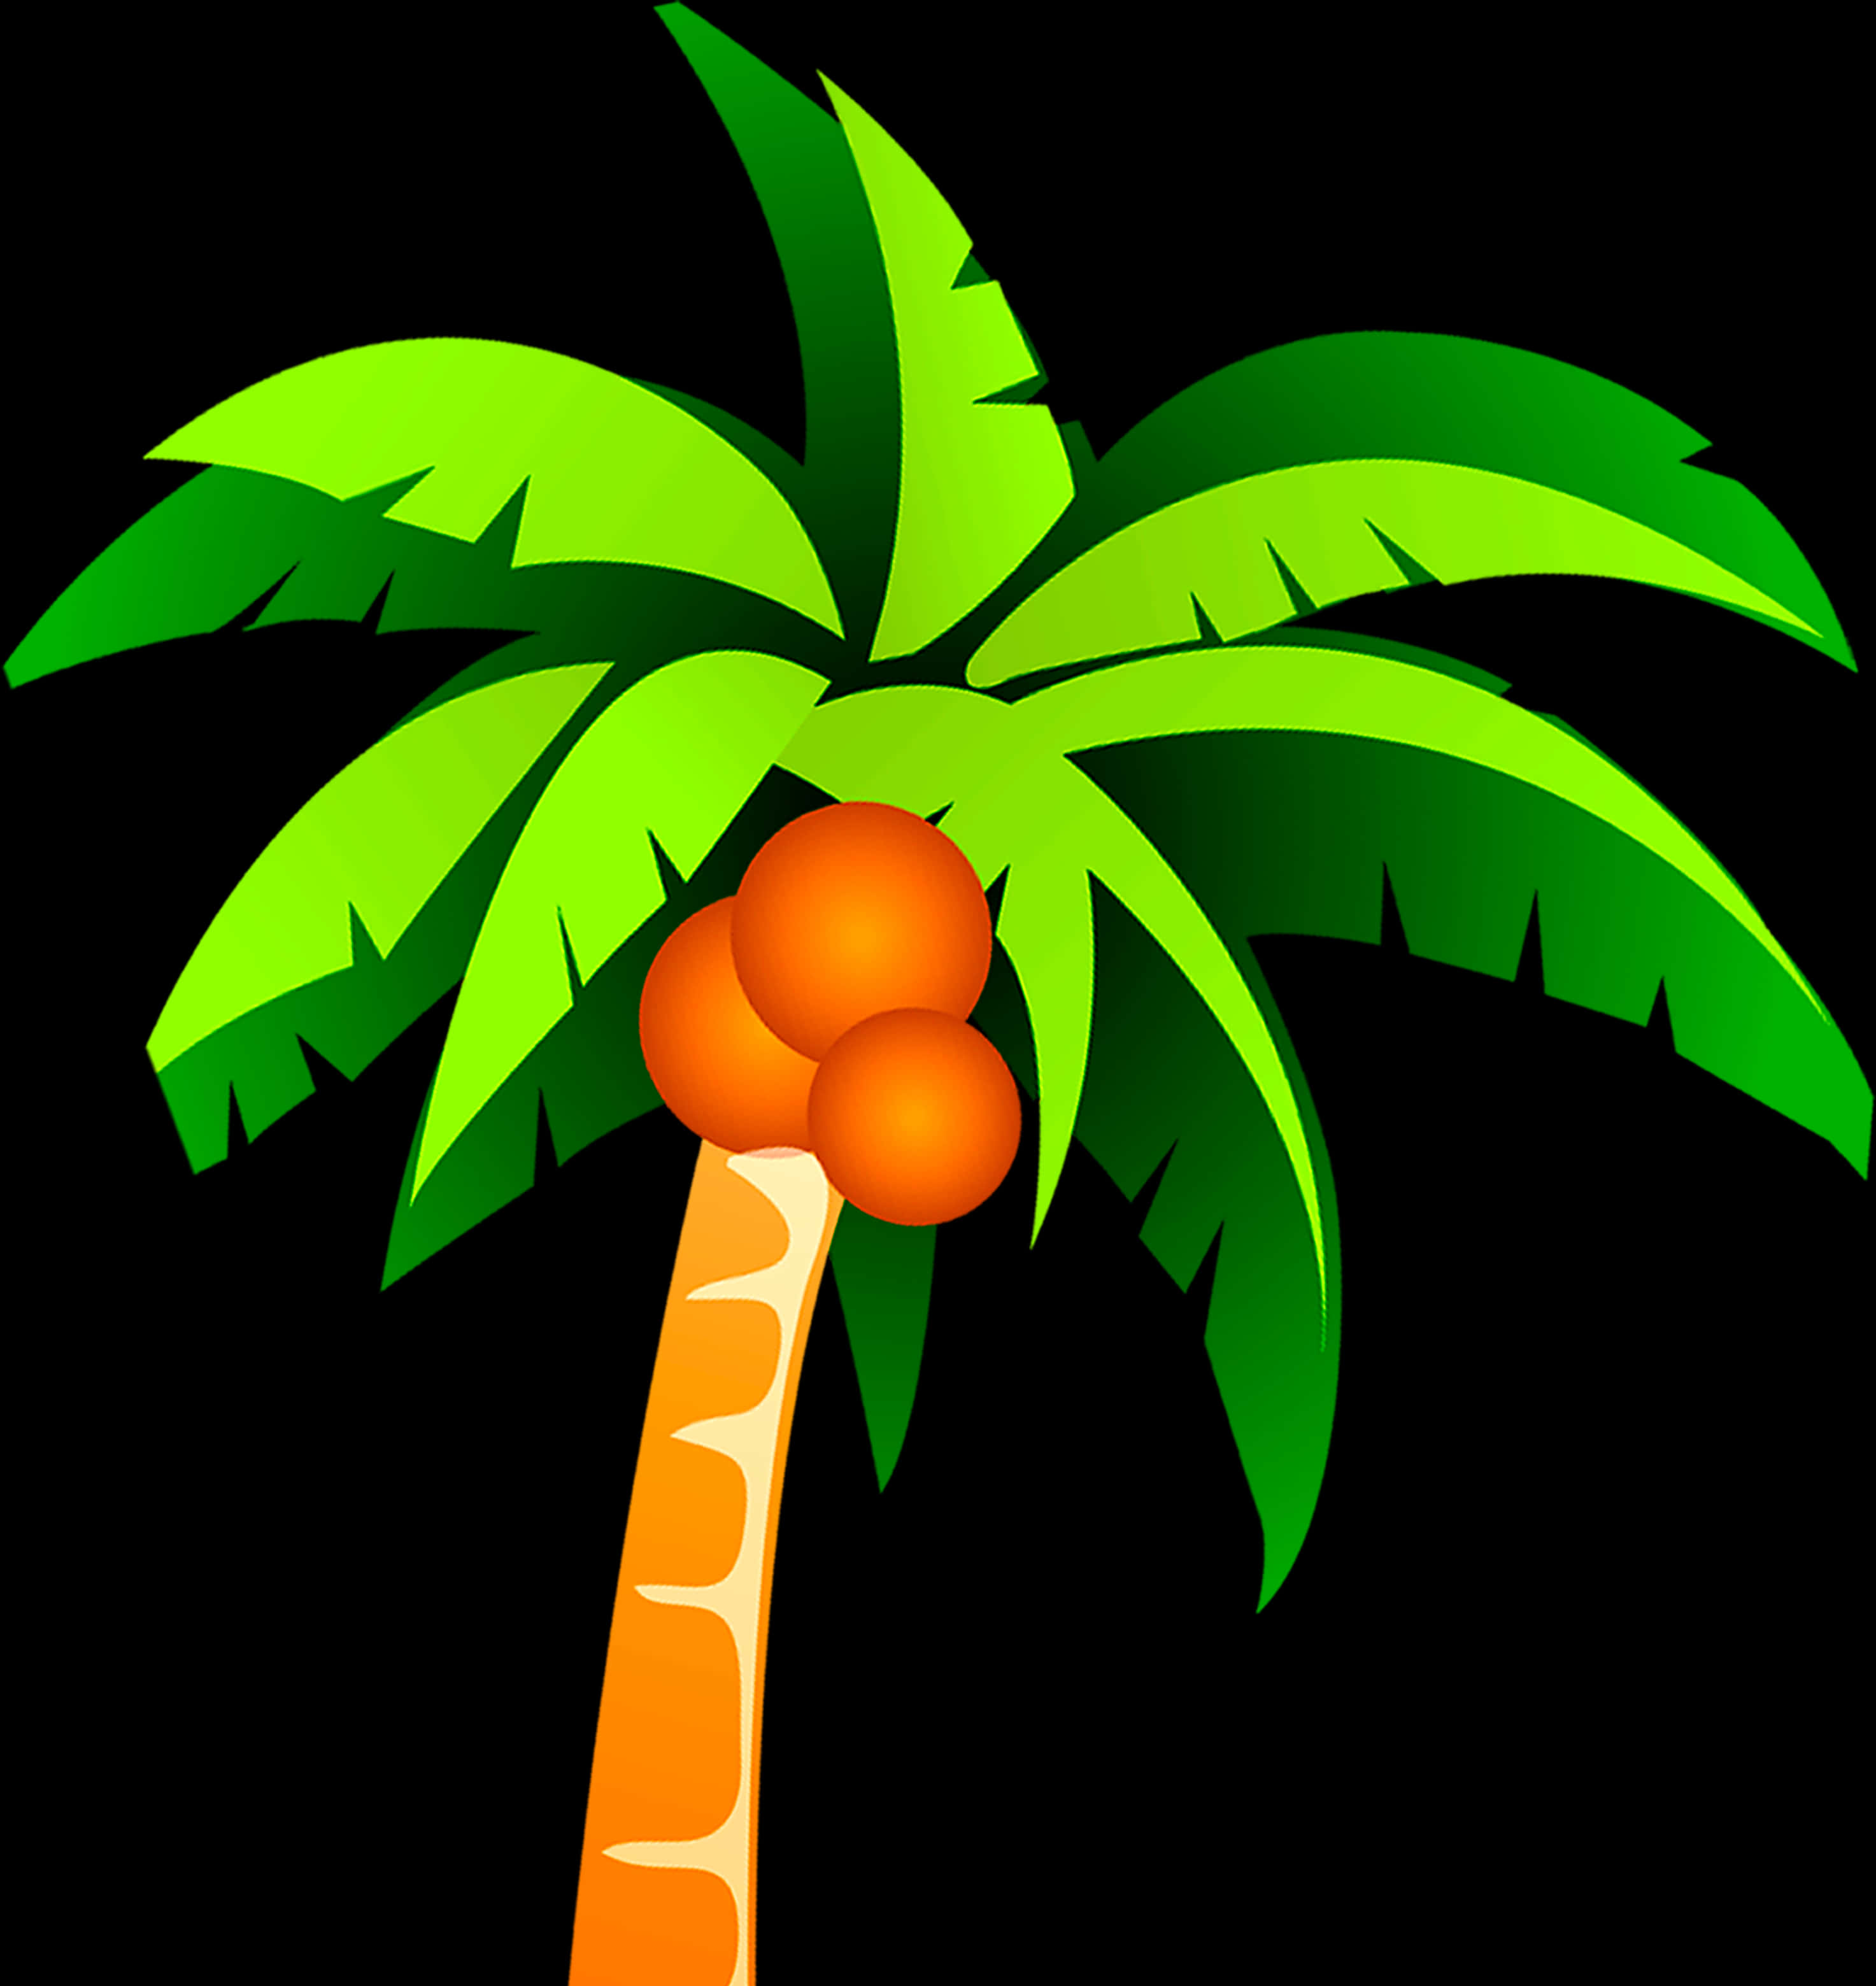 A Palm Tree With Orange Fruits